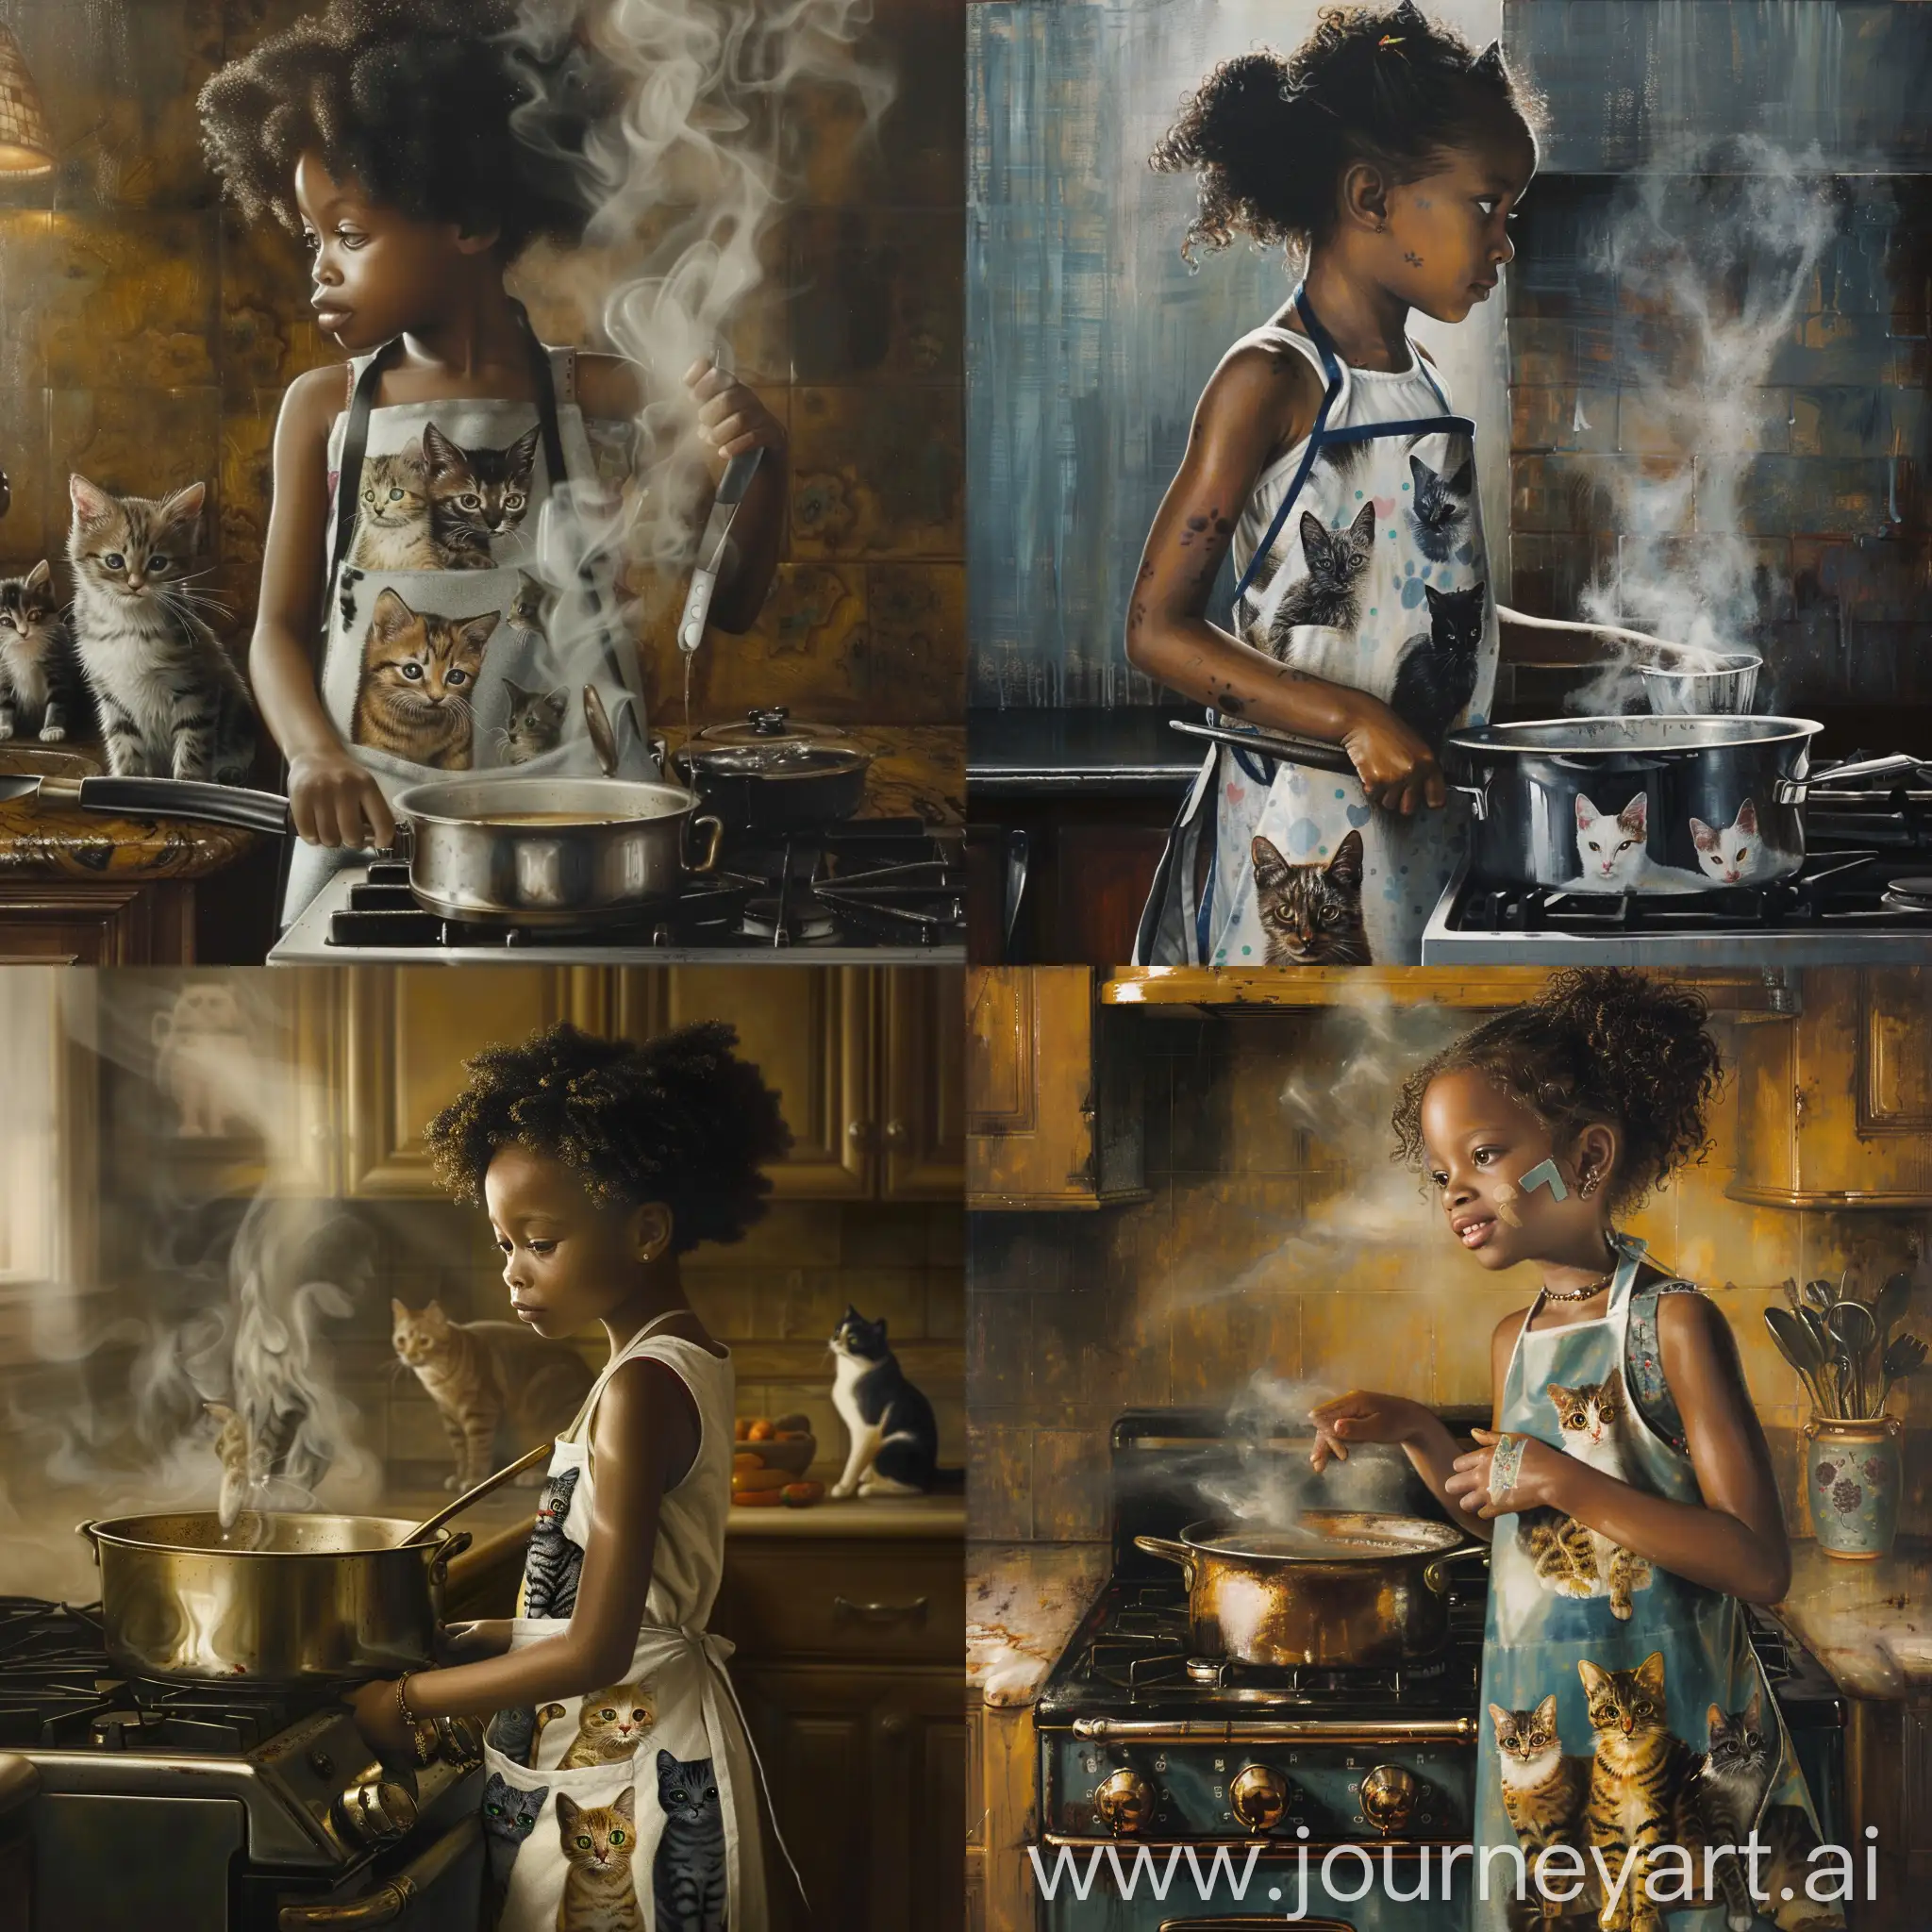 Чернокожая  девочка 10 лет стройная в фартуке, который разрисован котами, стоит у плиты на кухне, а в кастрюле что-то варится, едт пар